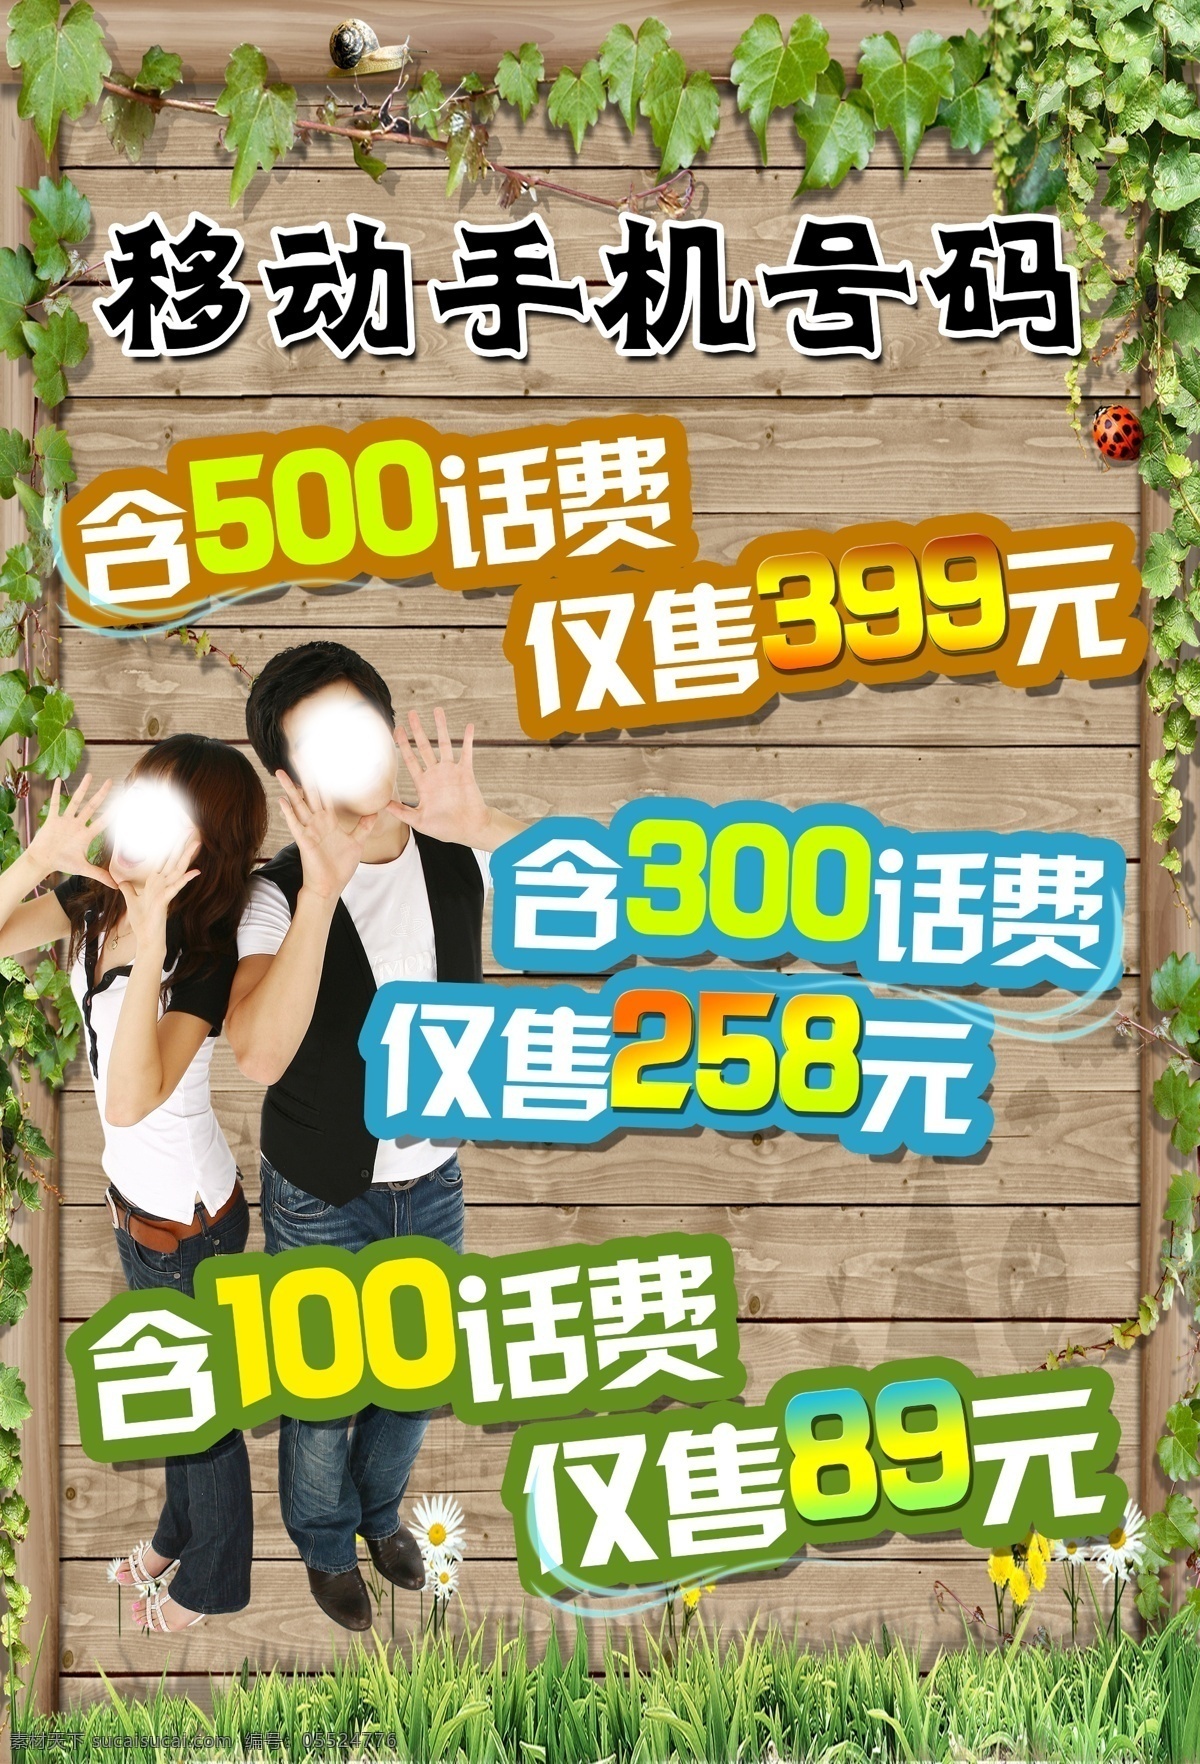 中国移动 手机卡 手机卡海报 中国移动通信 情侣 树叶 草丛 商业海报 分层 源文件